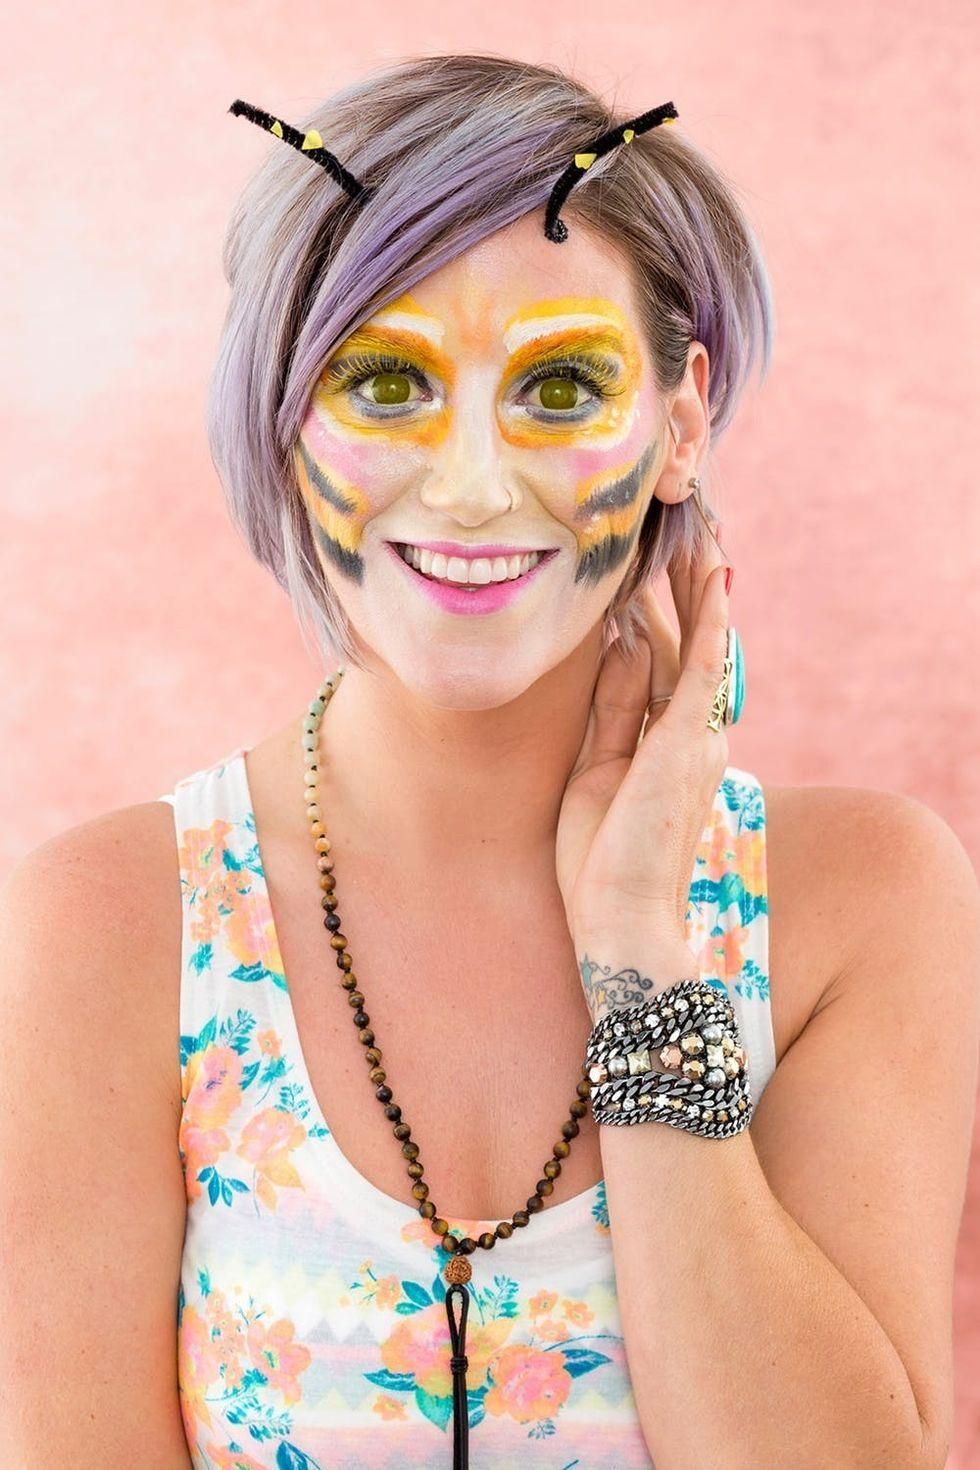 Snapchat Bee Filter Halloween makeup look